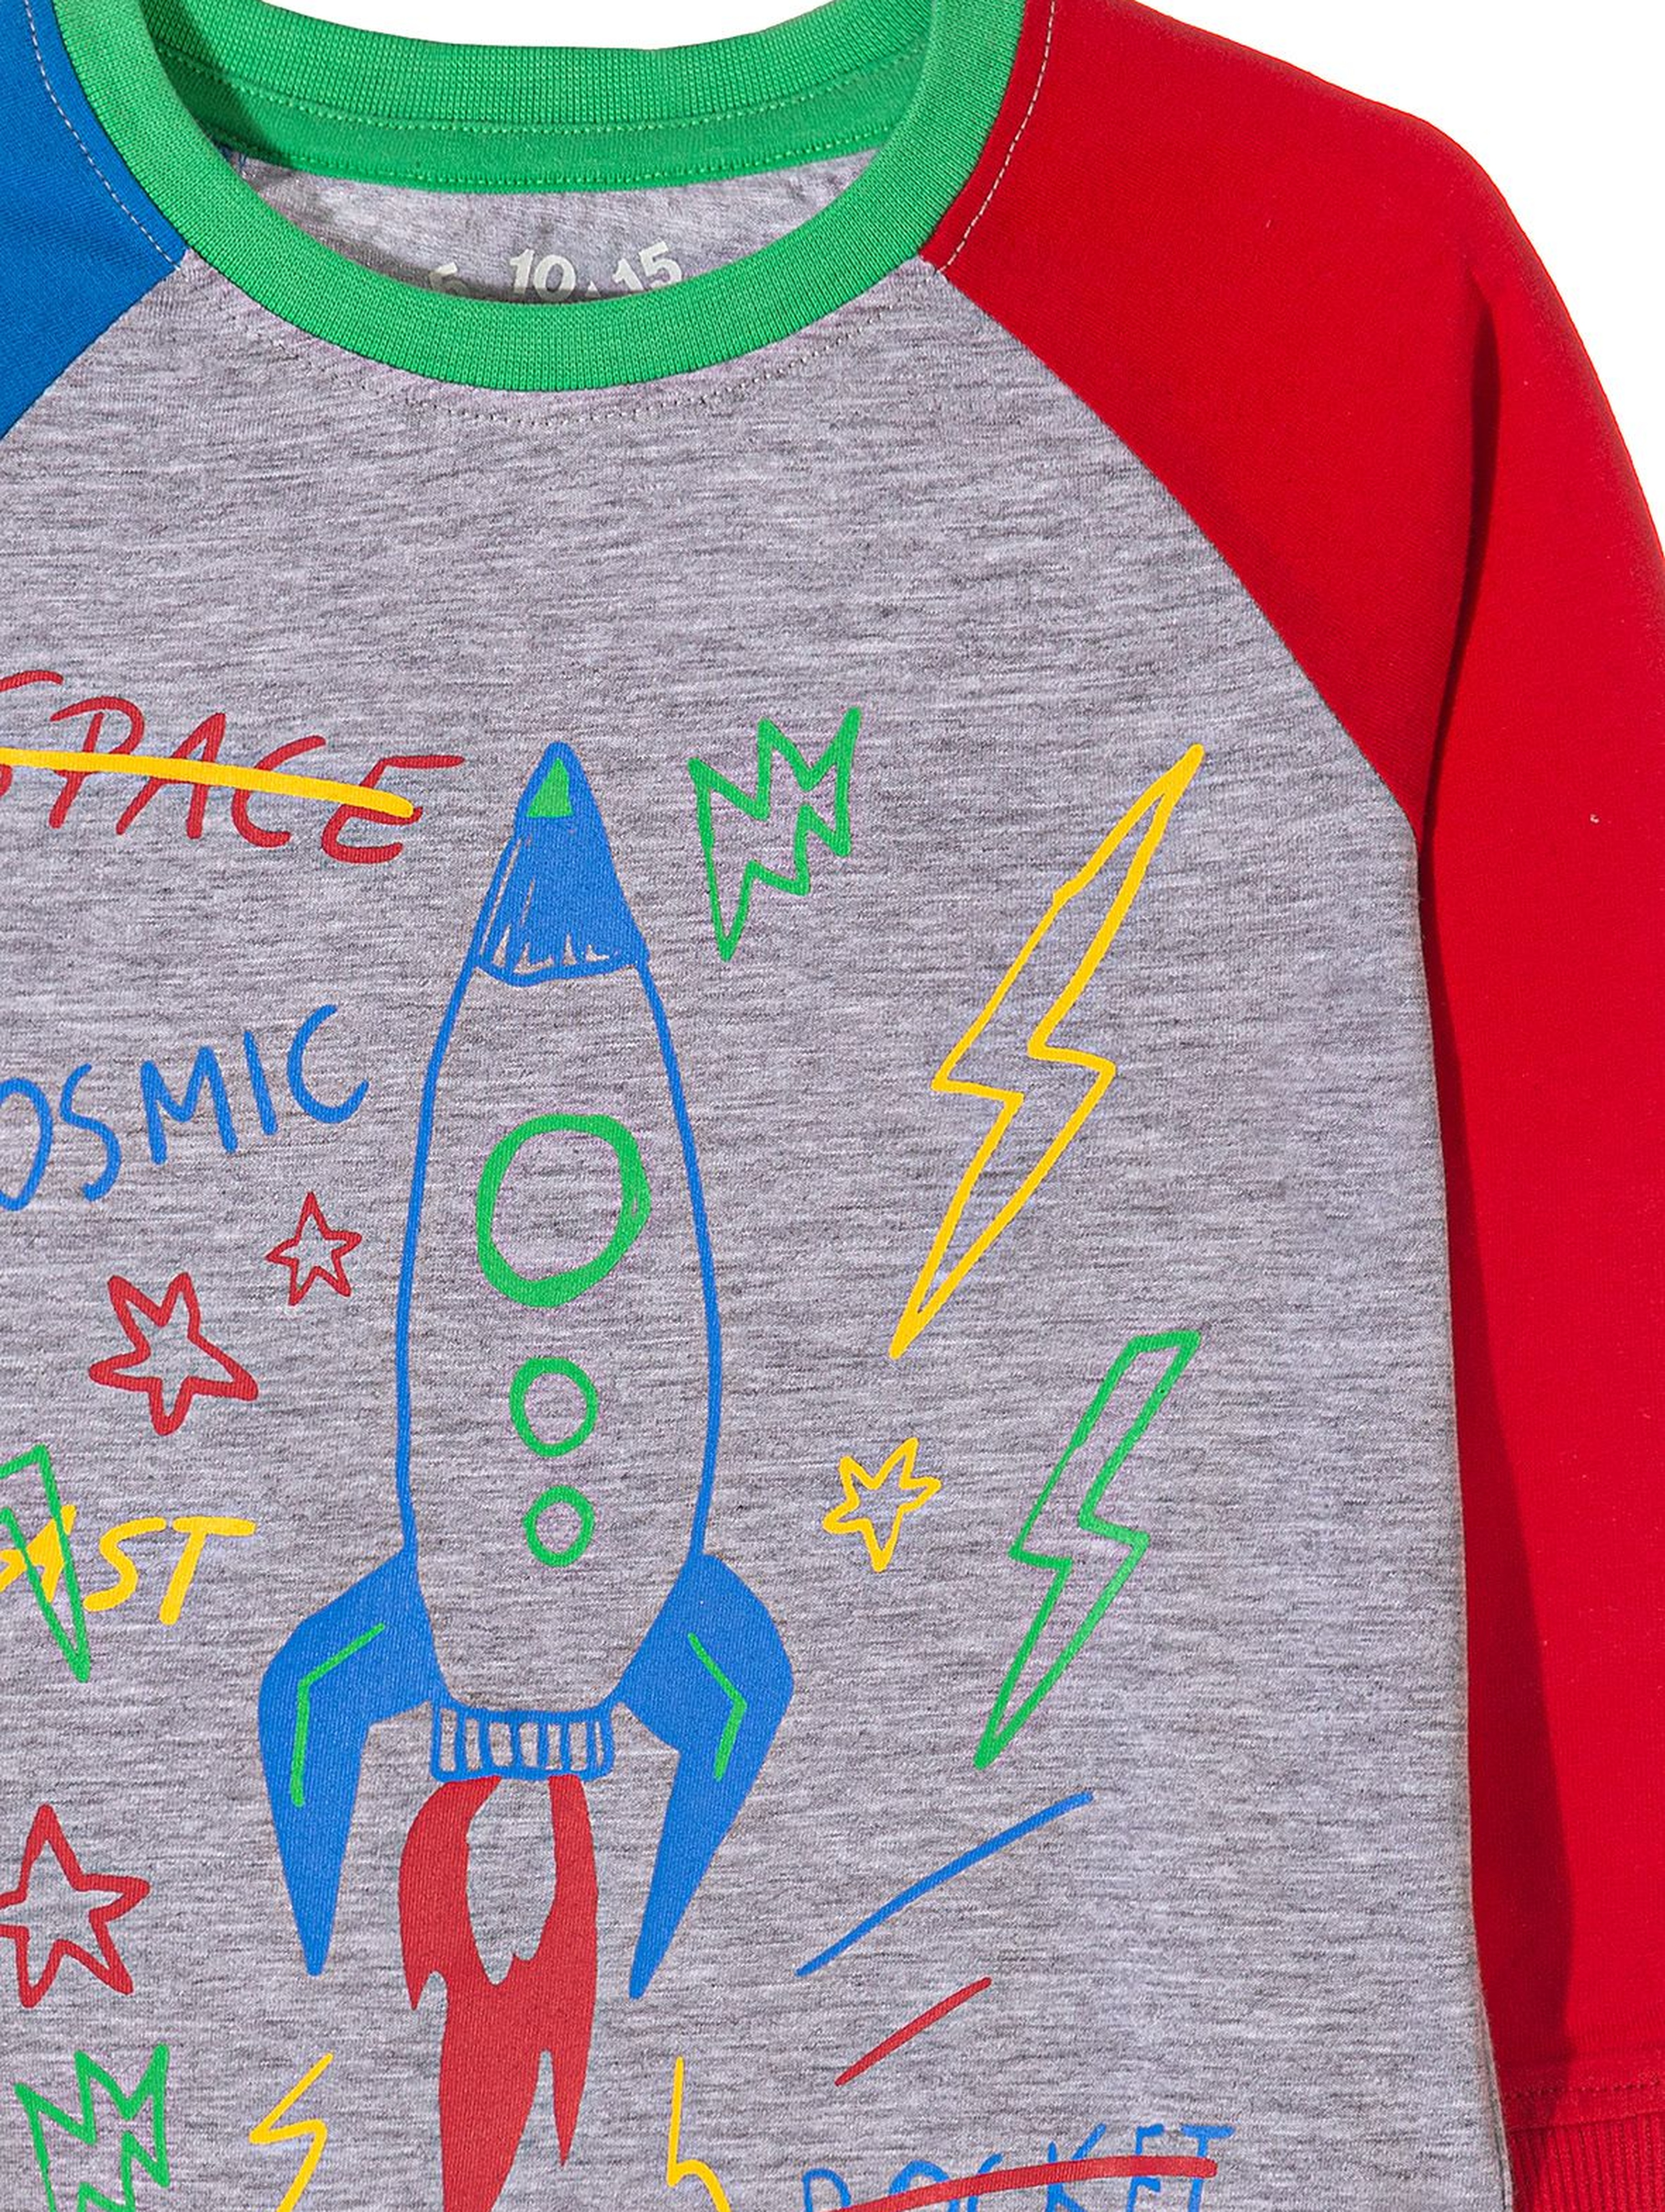 Piżama chłopięca z rakietą kosmiczną